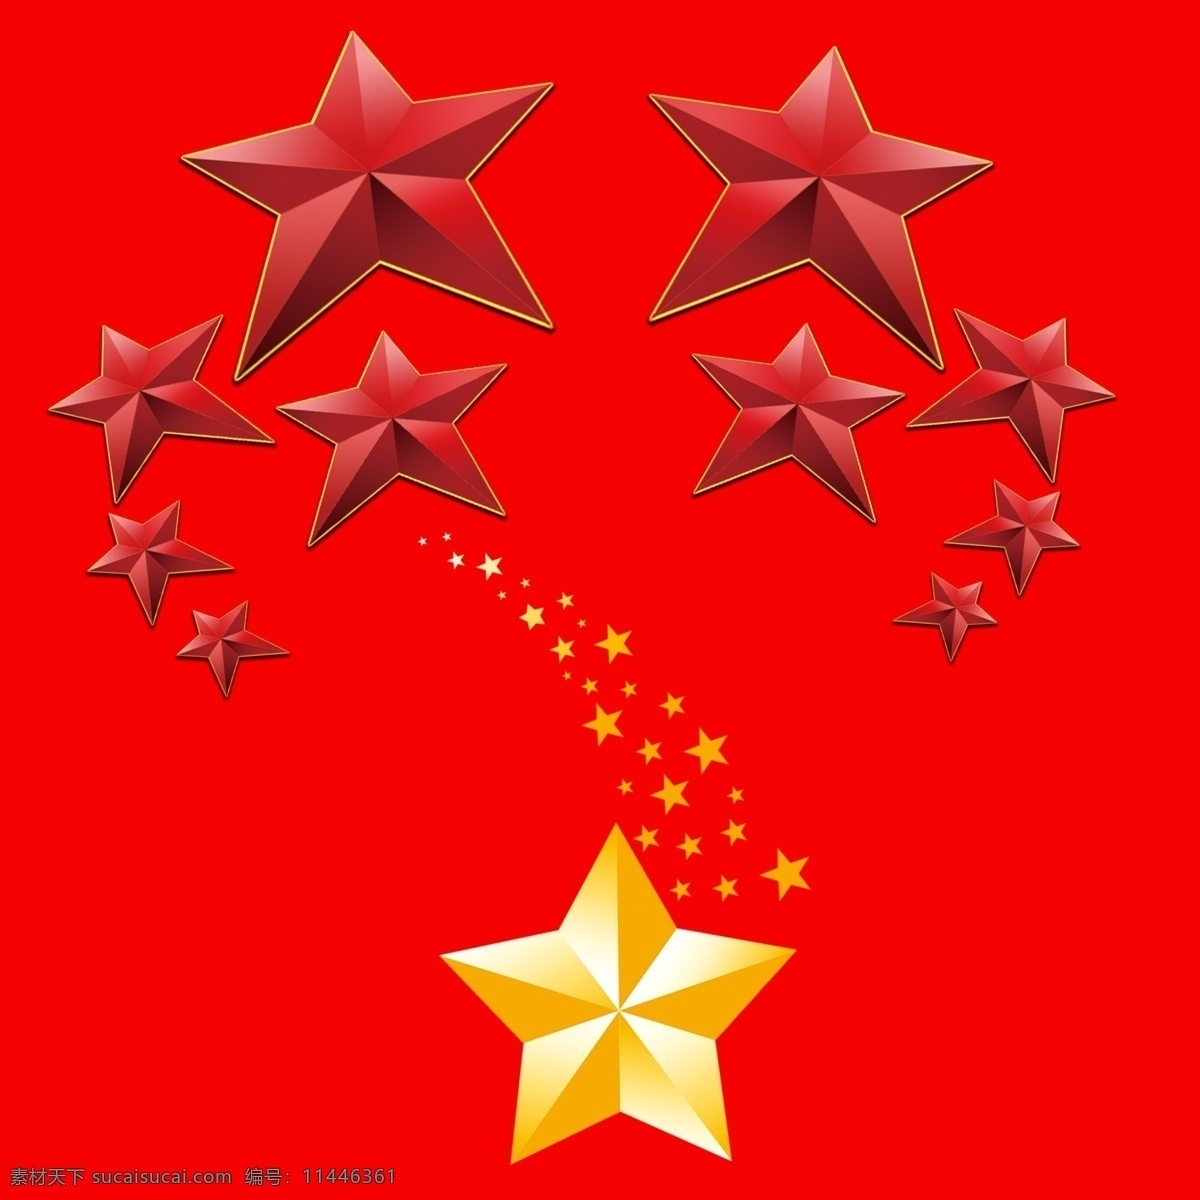 五角星 模板下载 五星 星星 大图 设计素材 背景素材 分层 源文件 红色